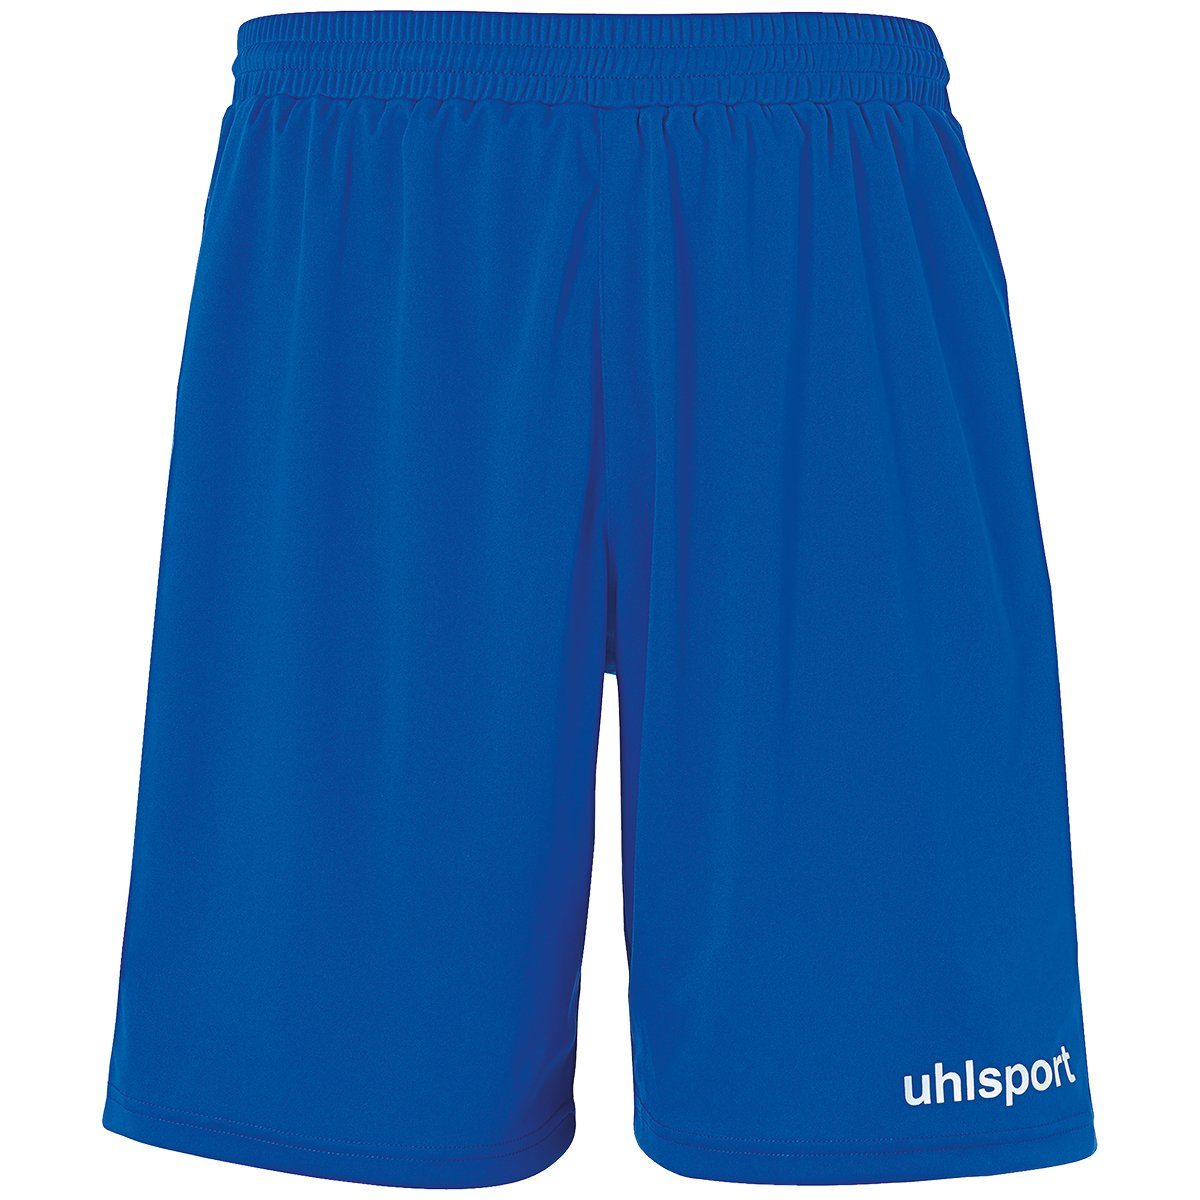 azurblau/weiß uhlsport PERFORMANCE Shorts SHORTS Shorts uhlsport